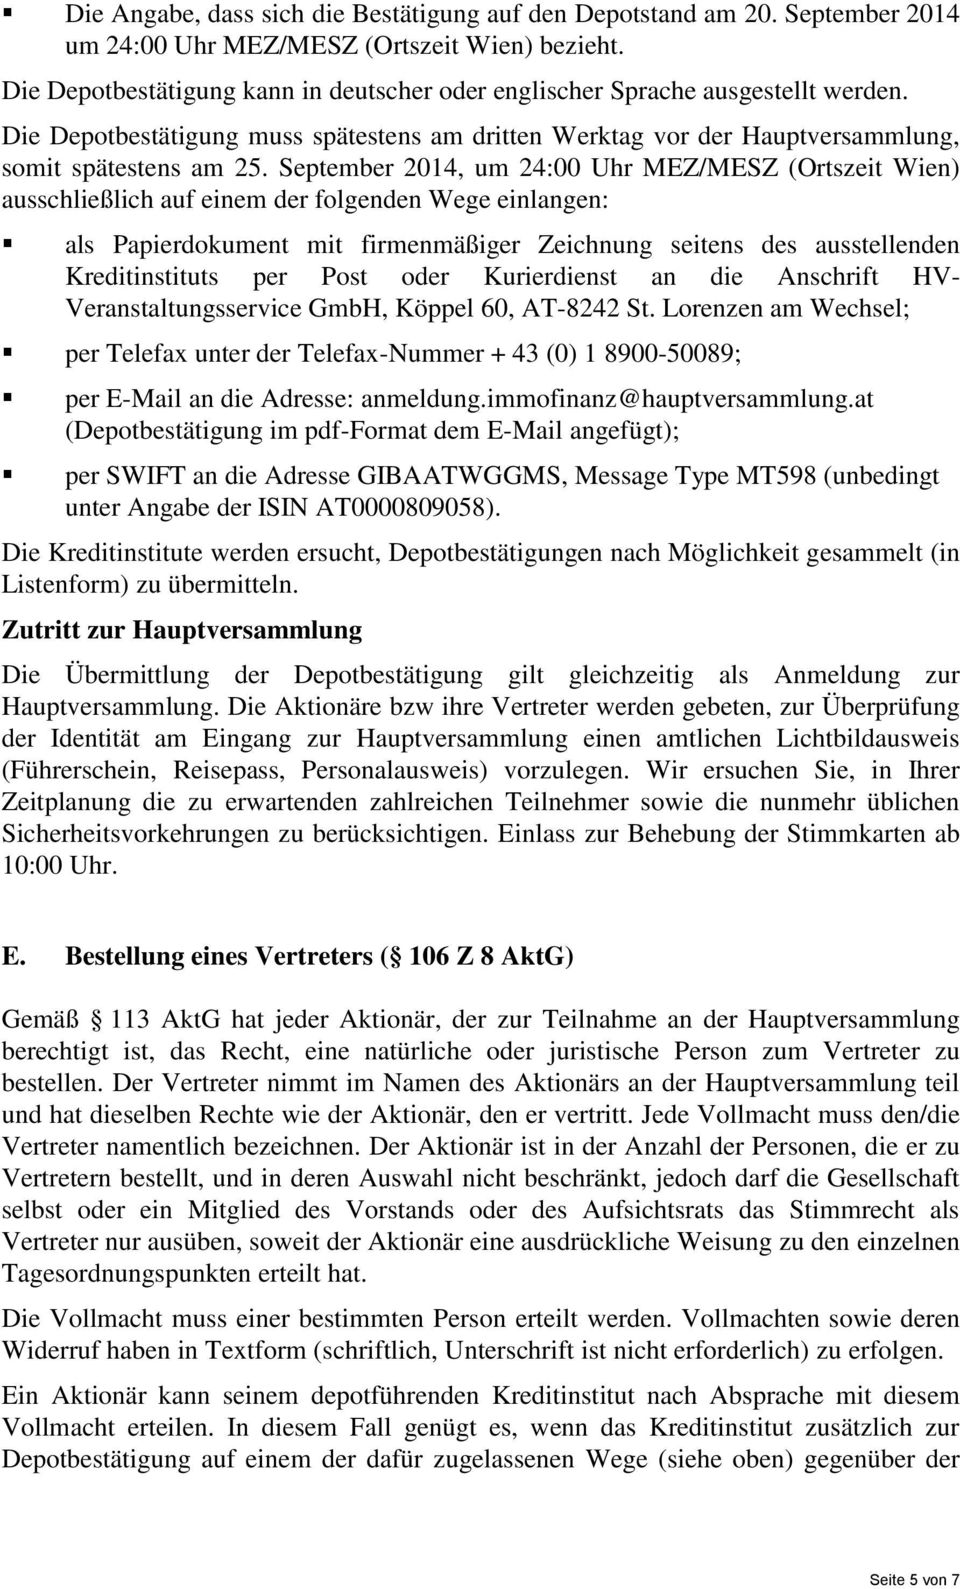 September 2014, um 24:00 Uhr MEZ/MESZ (Ortszeit Wien) ausschließlich auf einem der folgenden Wege einlangen: als Papierdokument mit firmenmäßiger Zeichnung seitens des ausstellenden Kreditinstituts